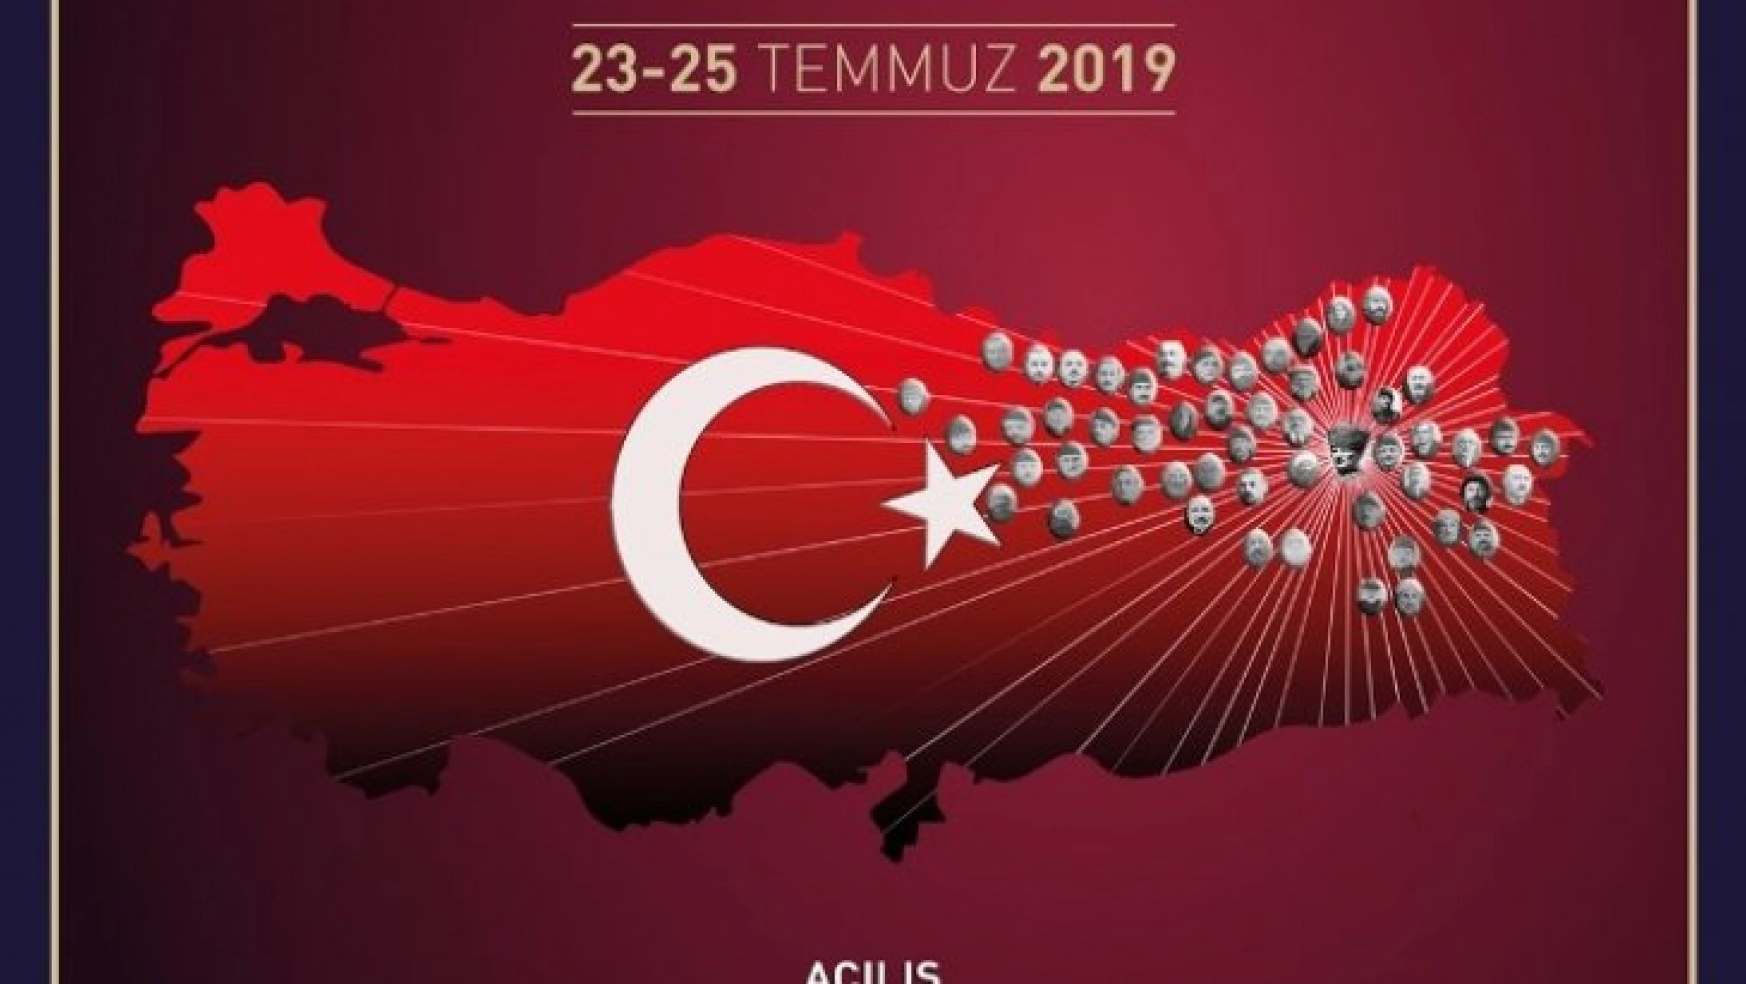 Erzurum Kongresi 100'üncü yılında uluslararası sempozyumu düzenlenecek